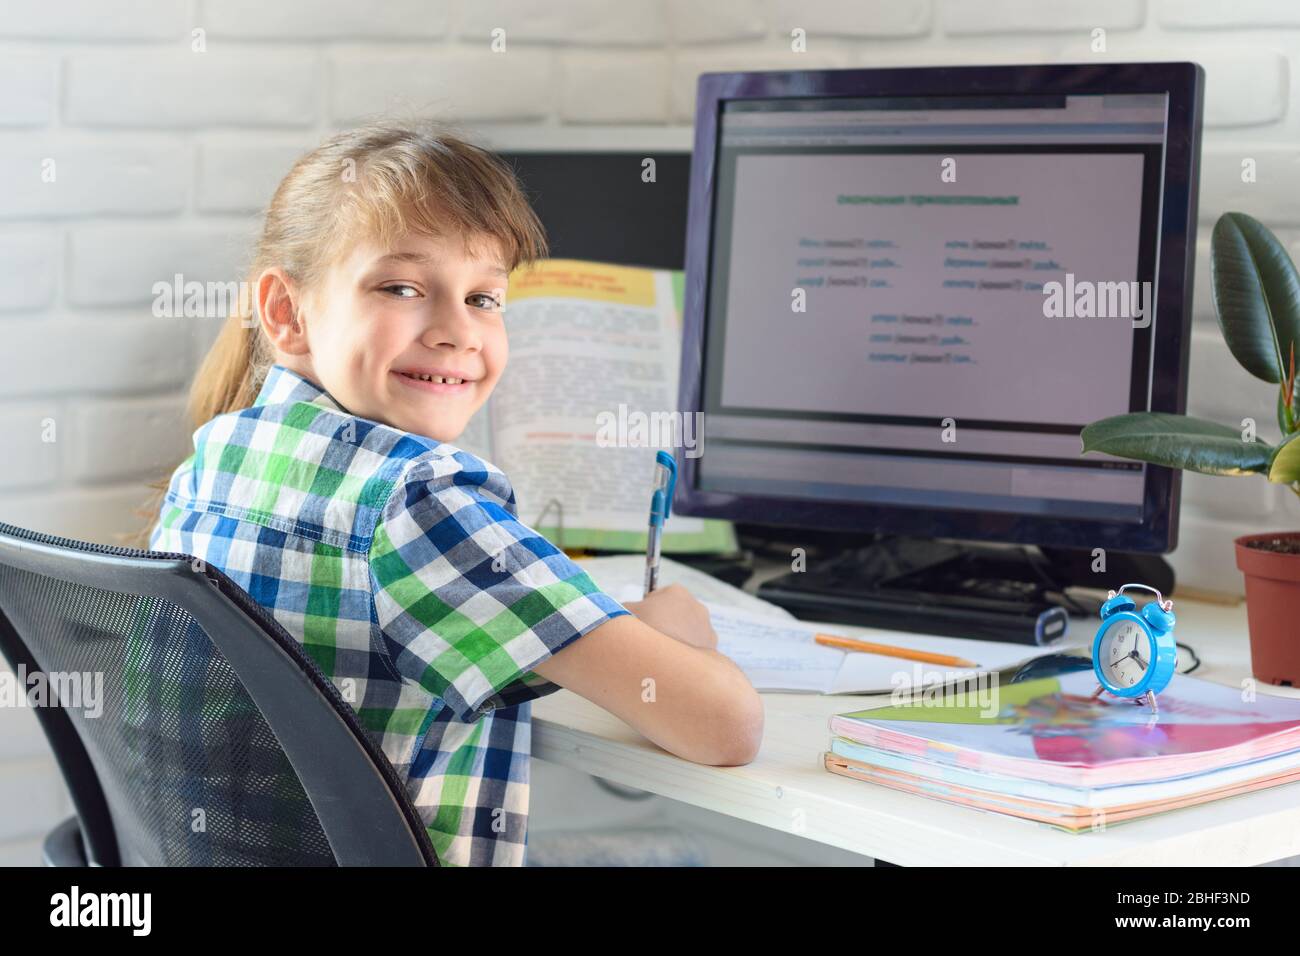 Un enfant satisfait est assis sur une table d'ordinateur et regarde dans le cadre Banque D'Images